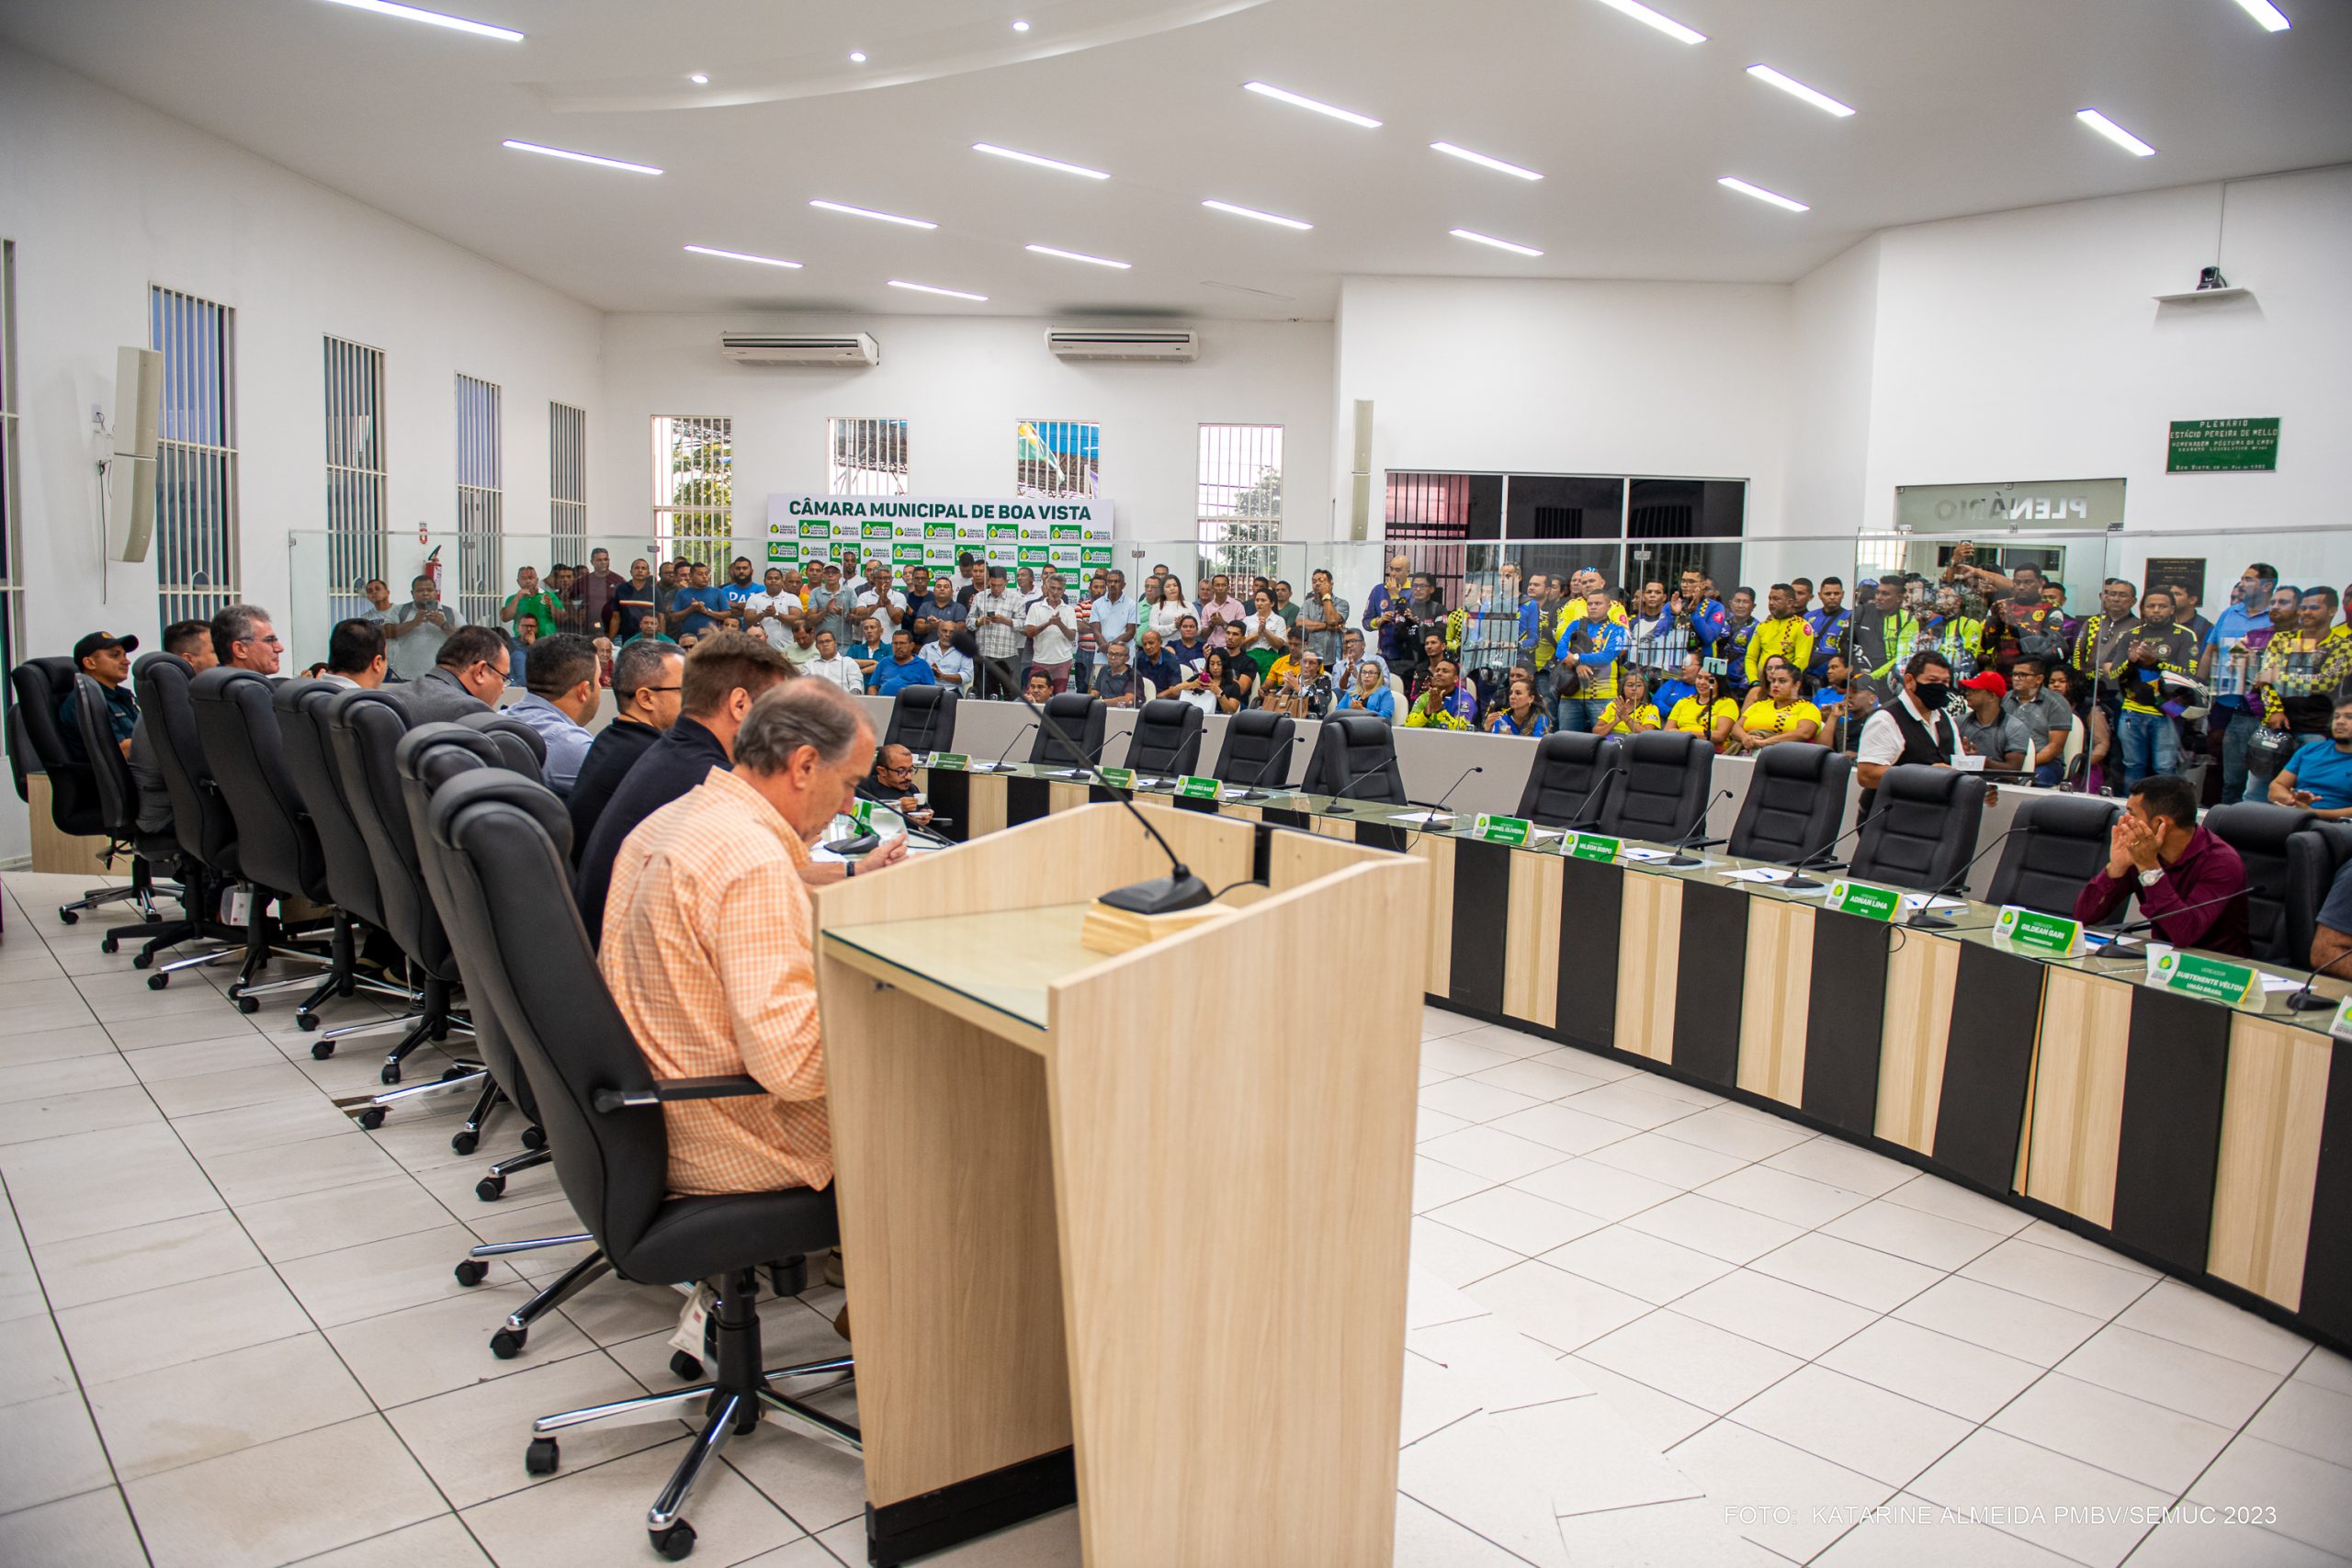 Mobilidade urbana de Boa Vista é debatida em audiência pública na Câmara Municipal